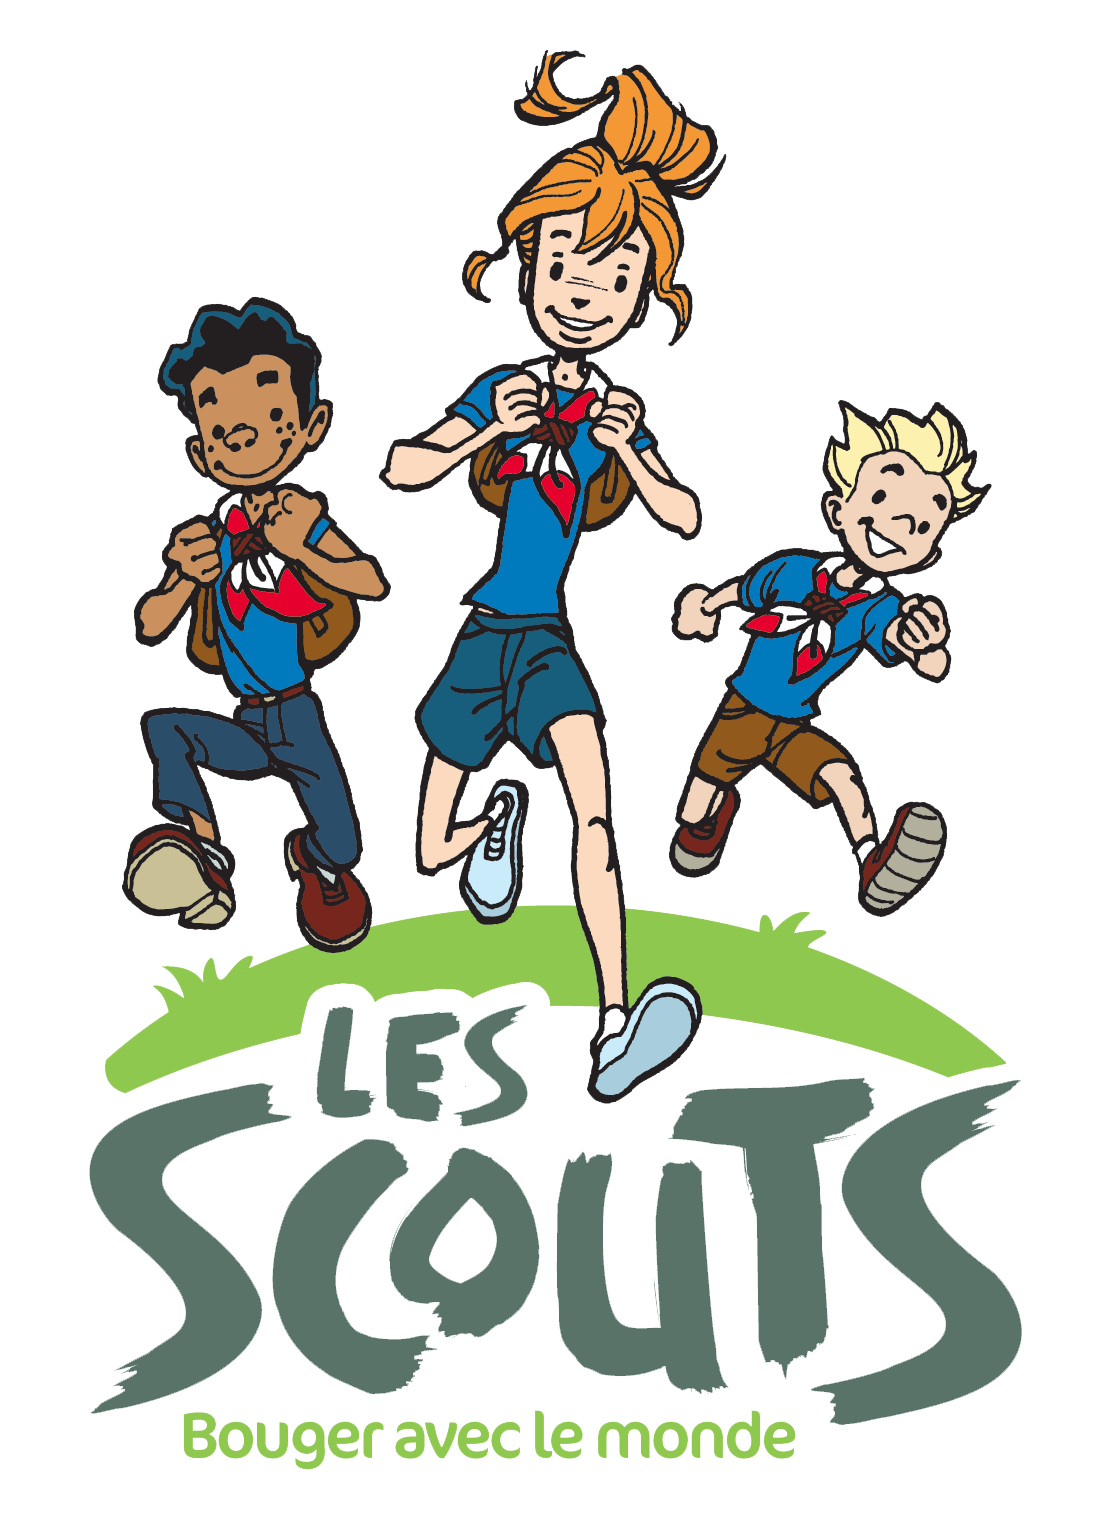 Les Scouts